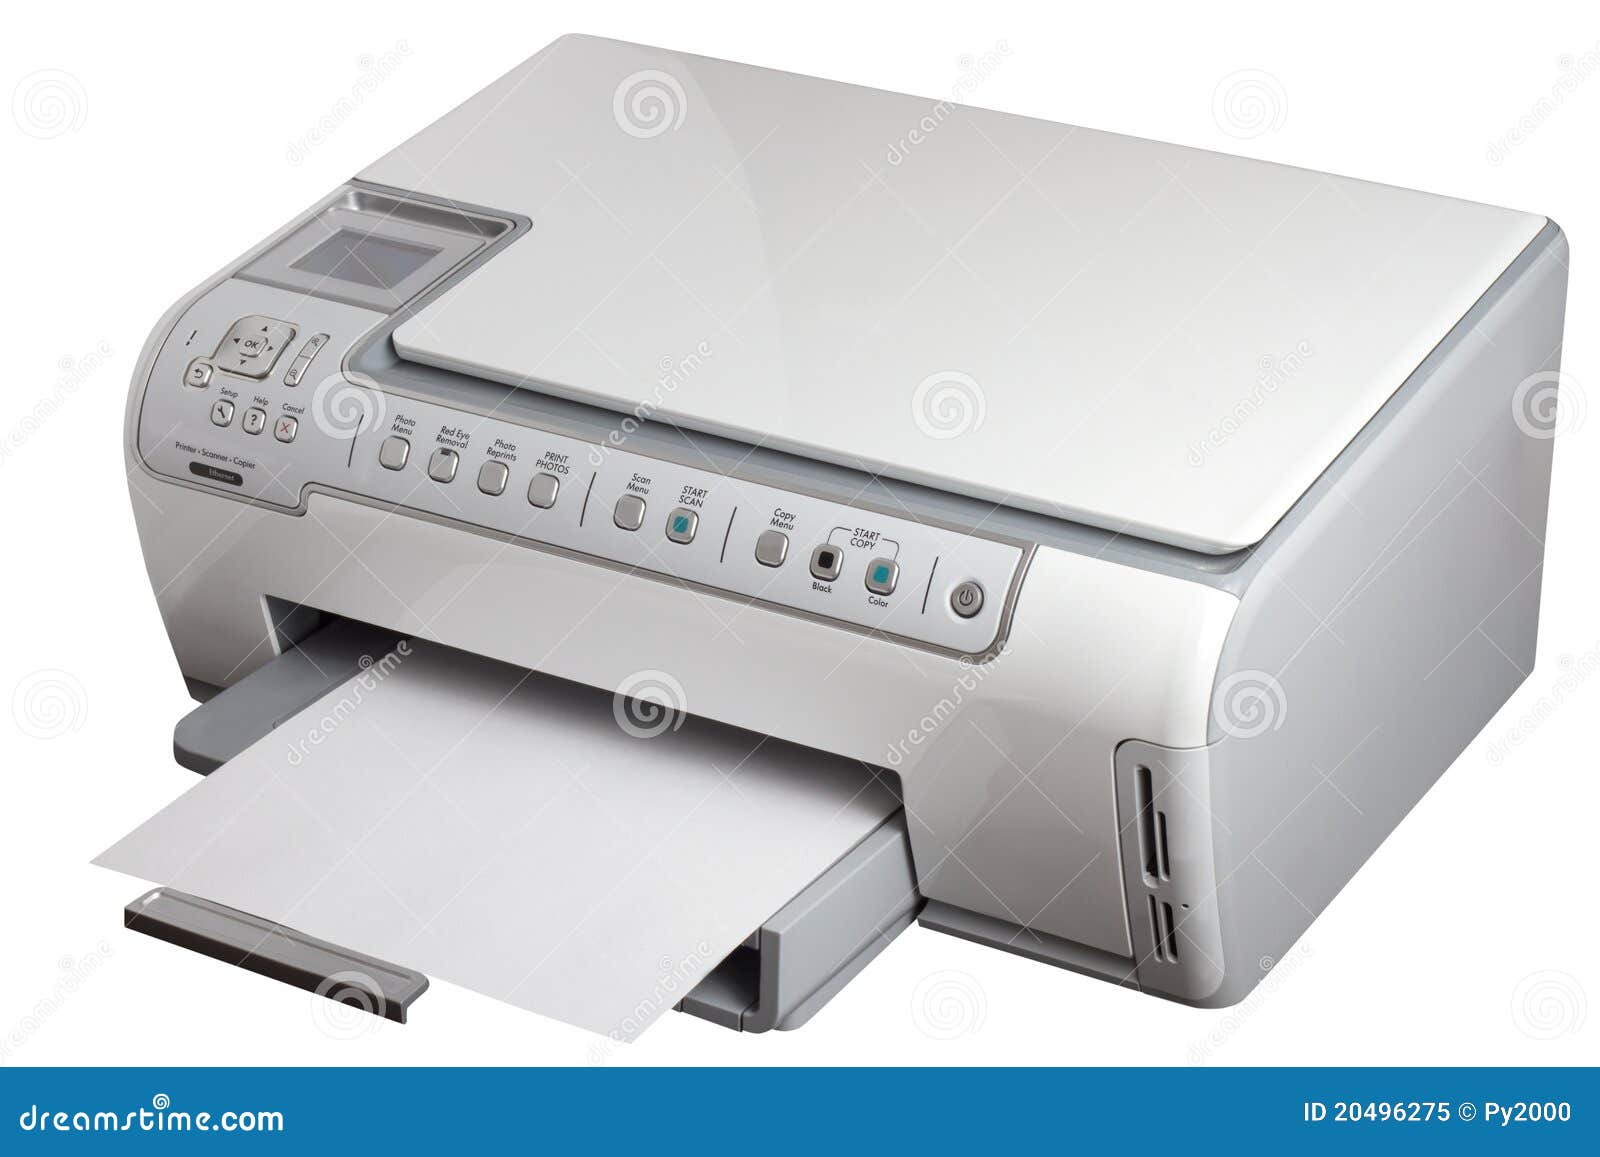 printer scanner copier